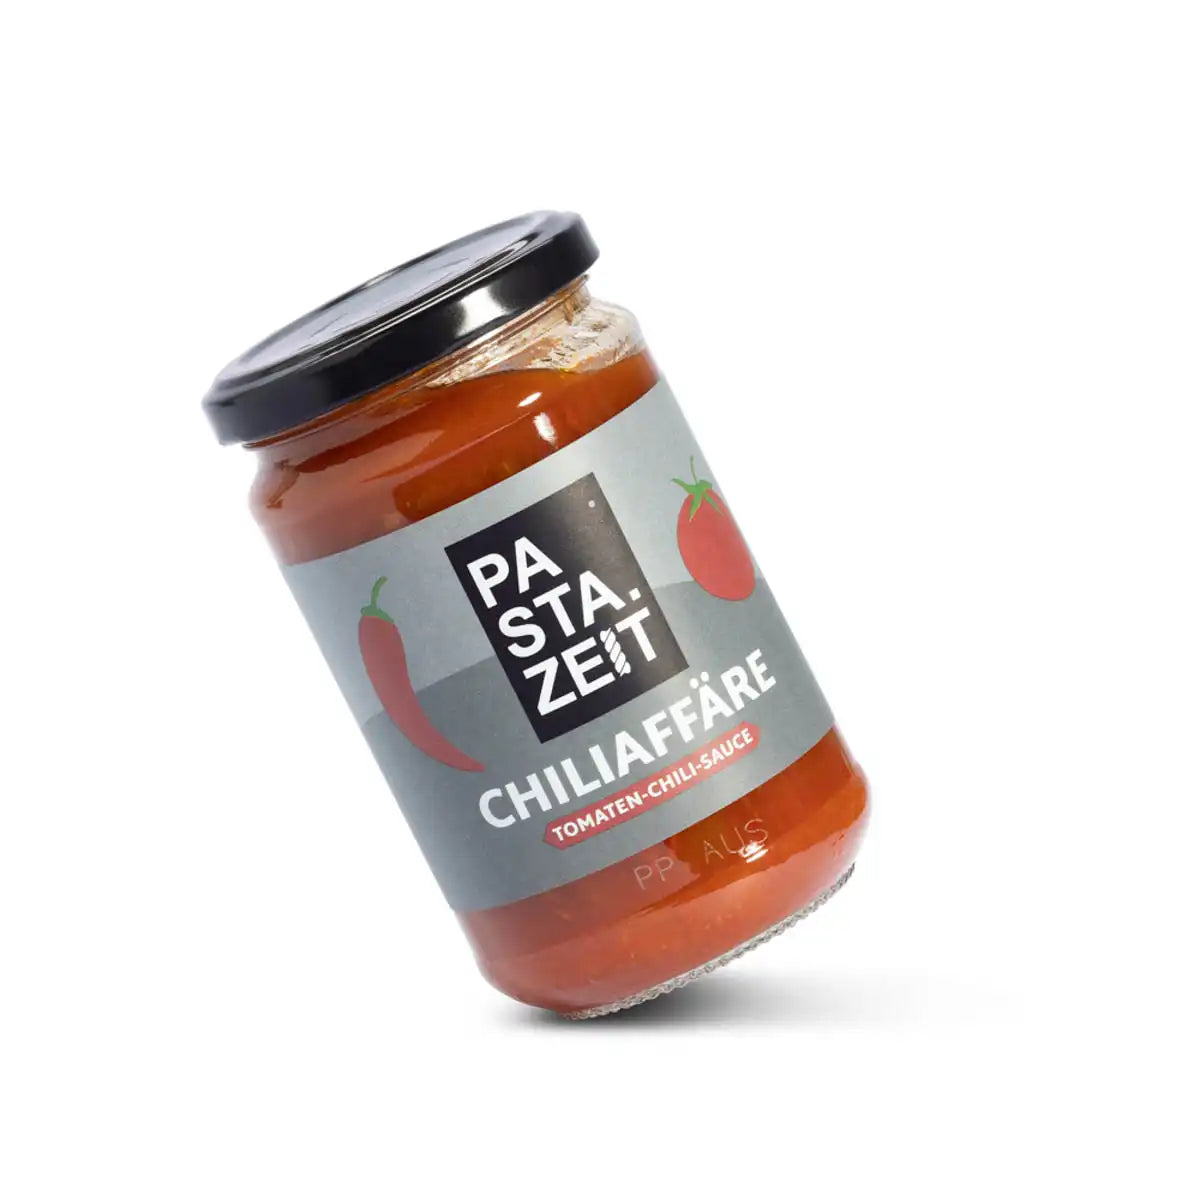 Dieses Produkt beinhaltet 290g Tomaten Chili Sauce